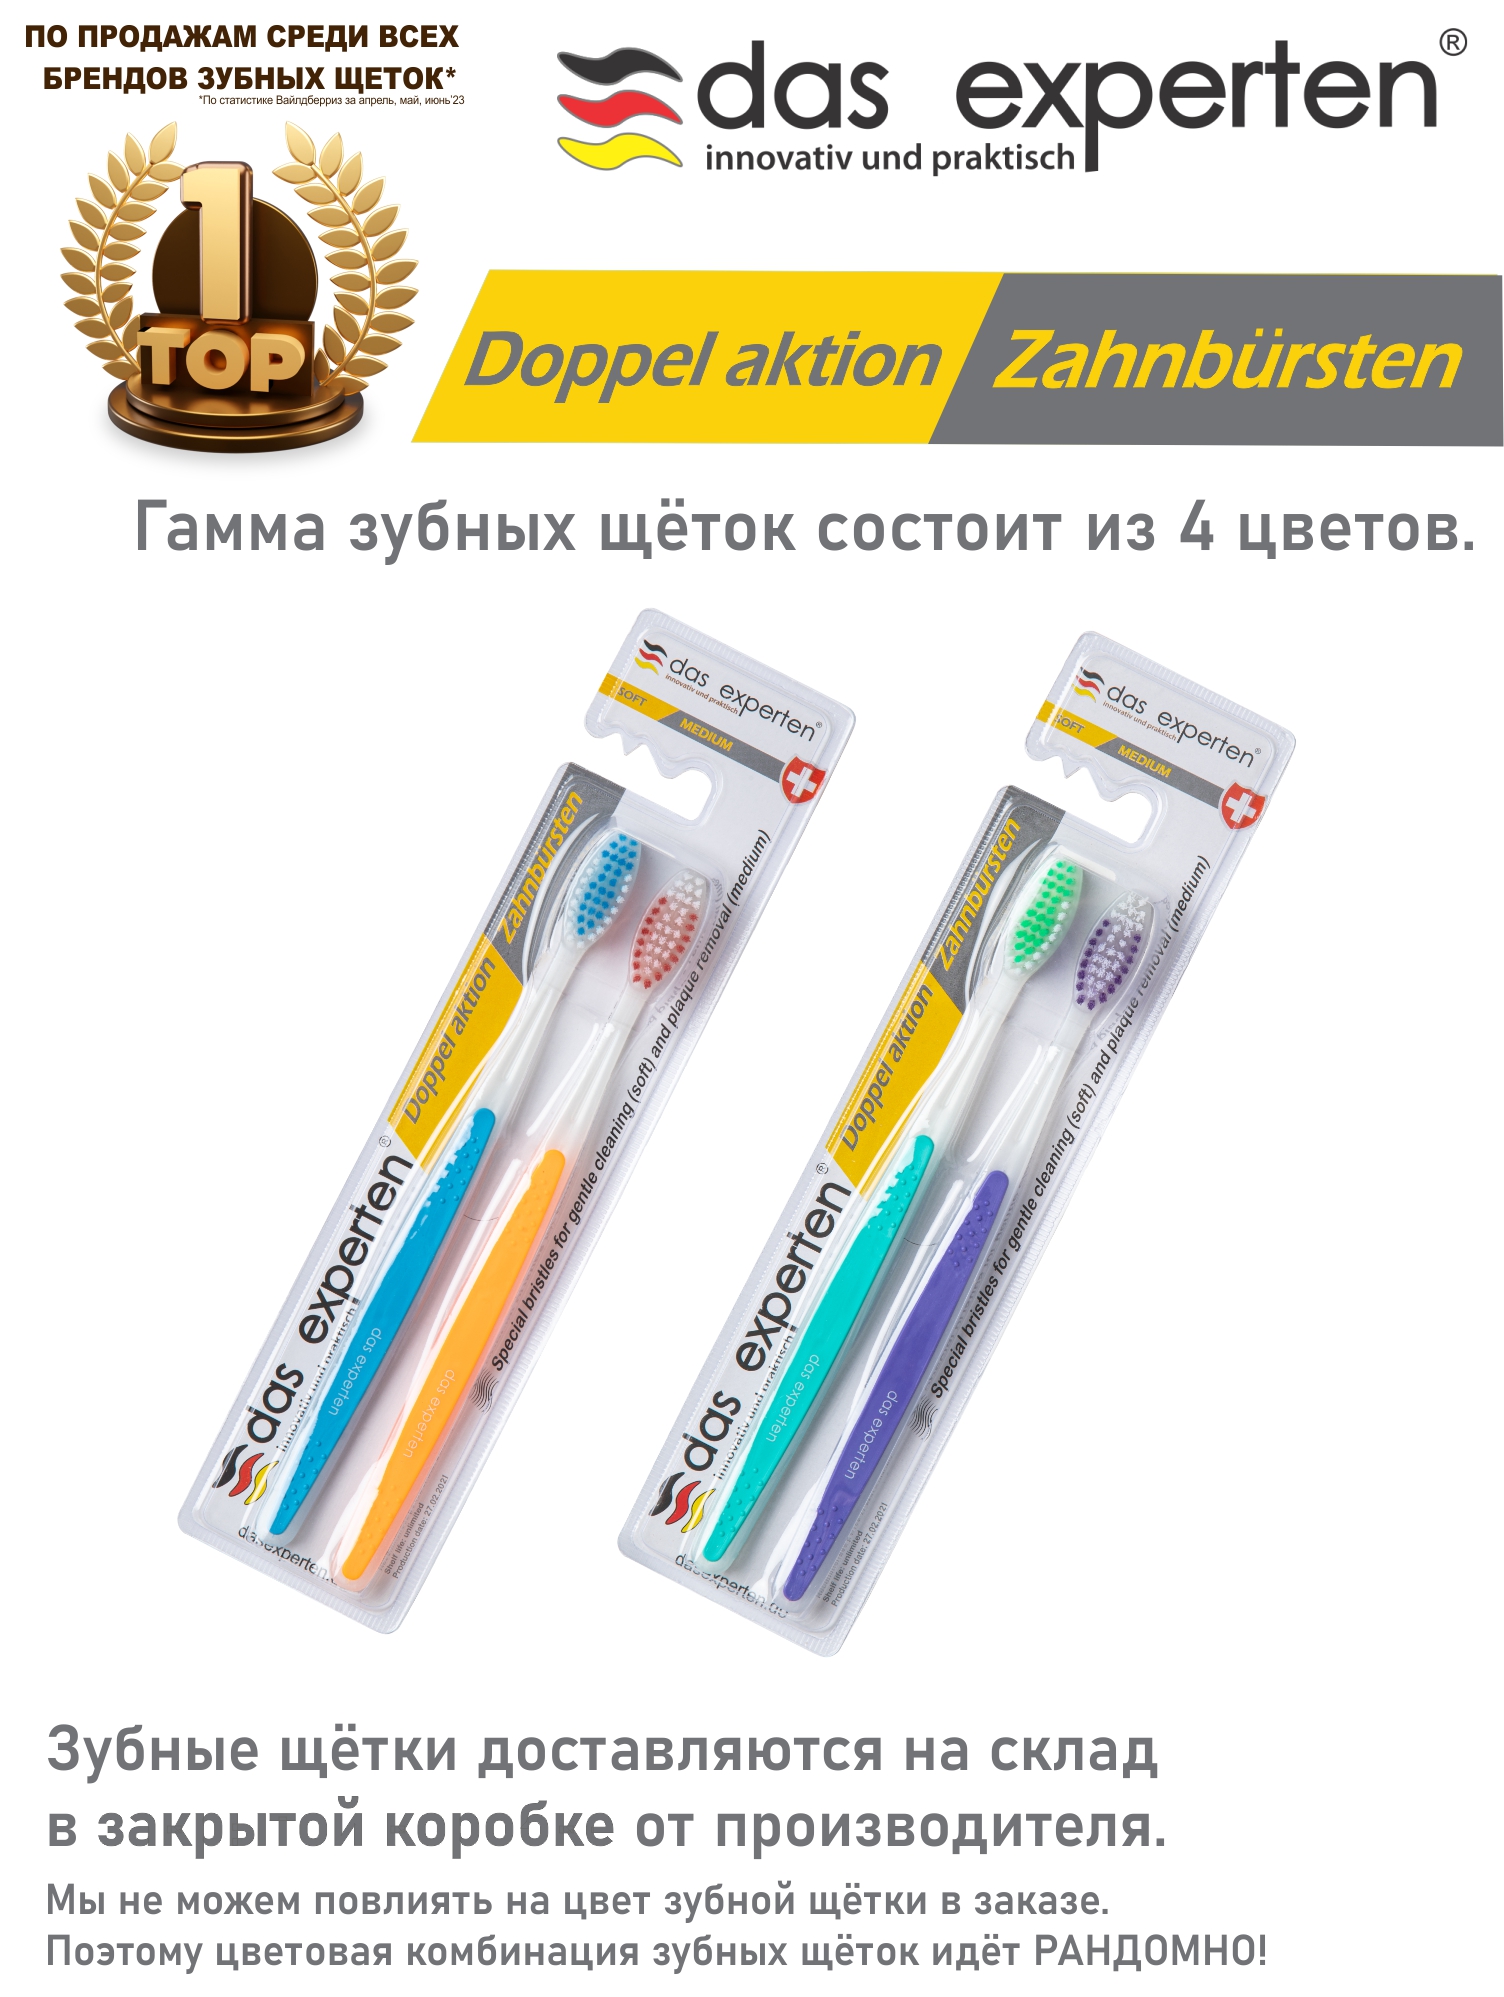 Зубные щетки Das Experten DOPPEL AKTION 2 зубные щетки с напылением из бамбукового угля 10 шт